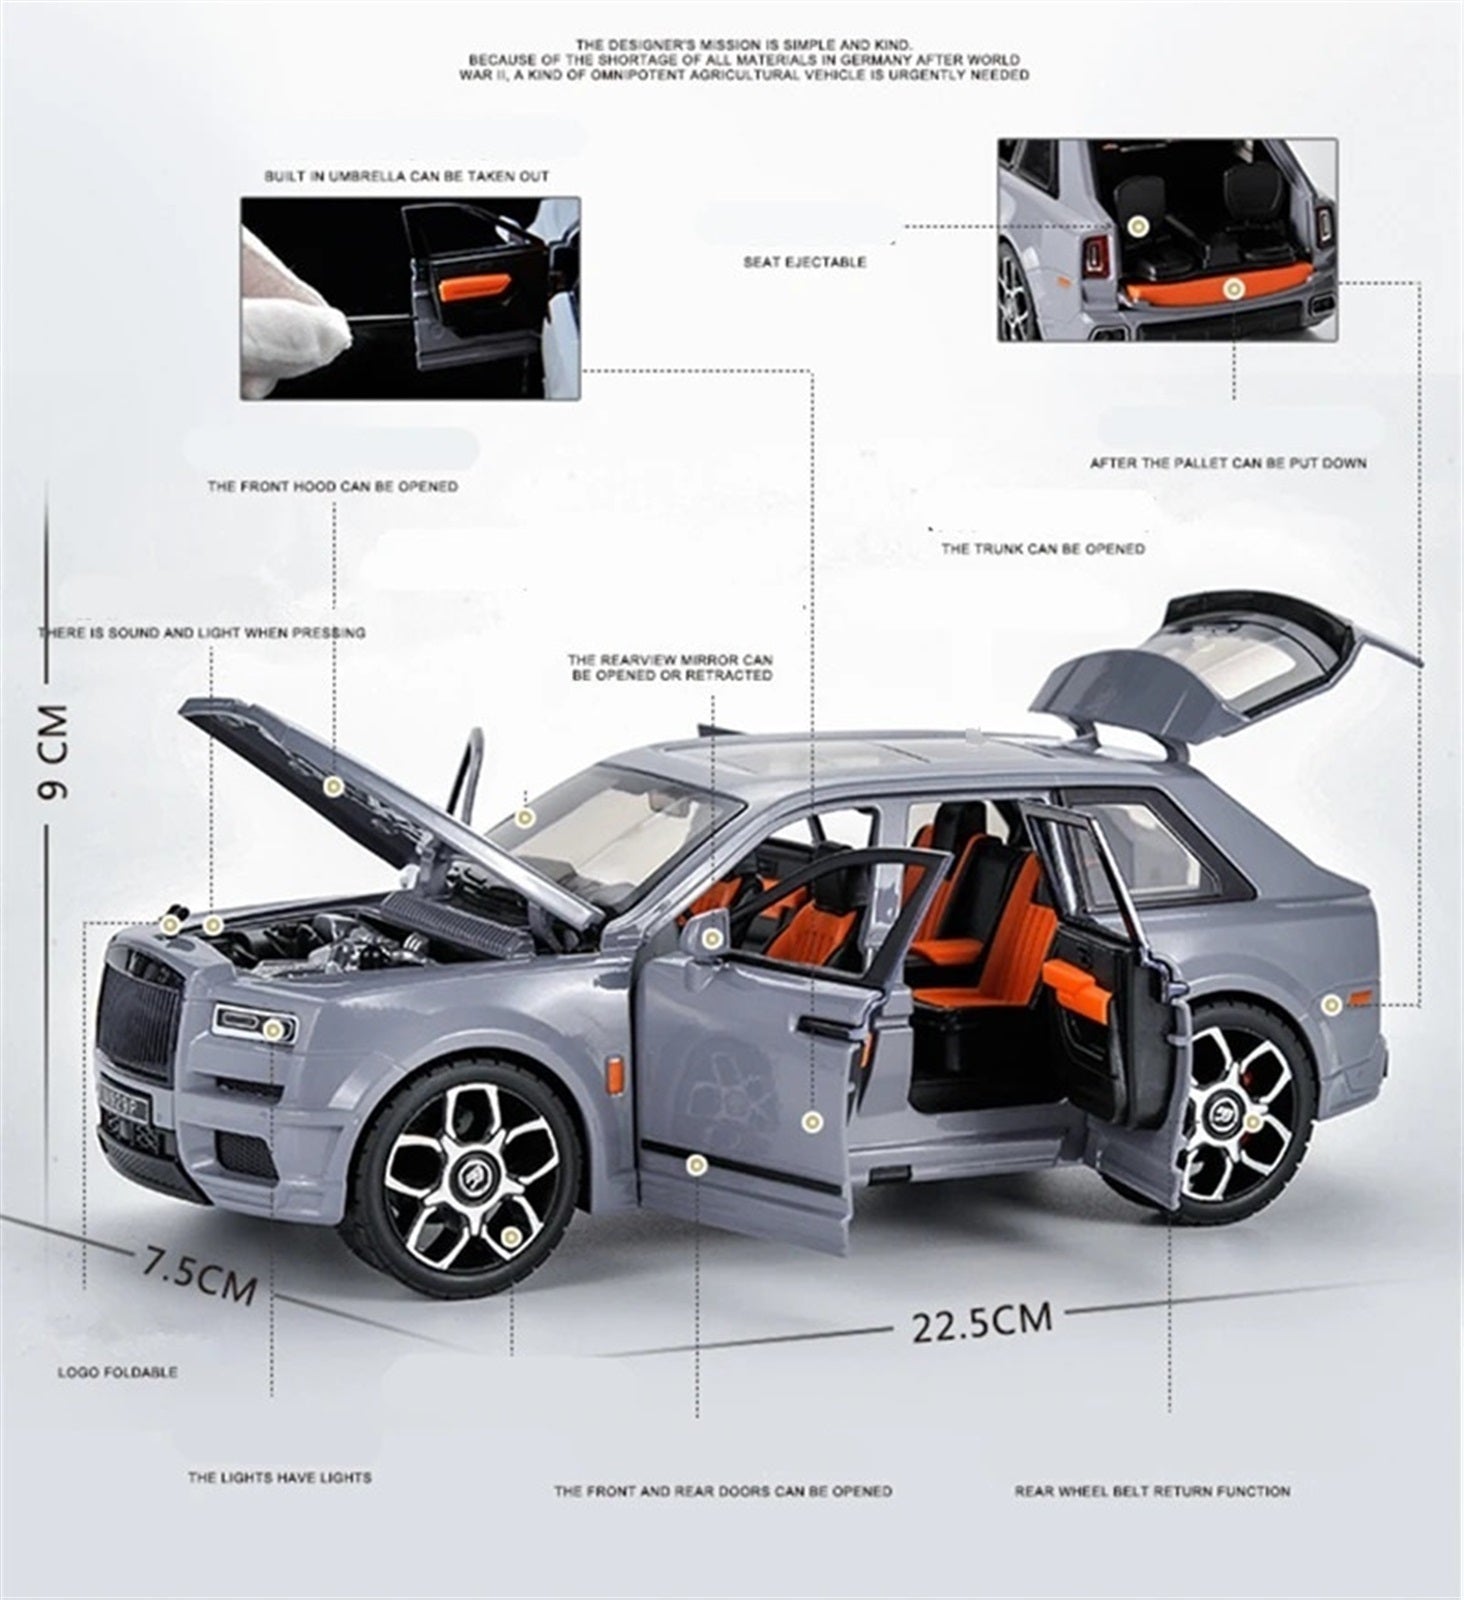 1:20 Rolls-Royce Cullinan SUV die-cast alloy model car